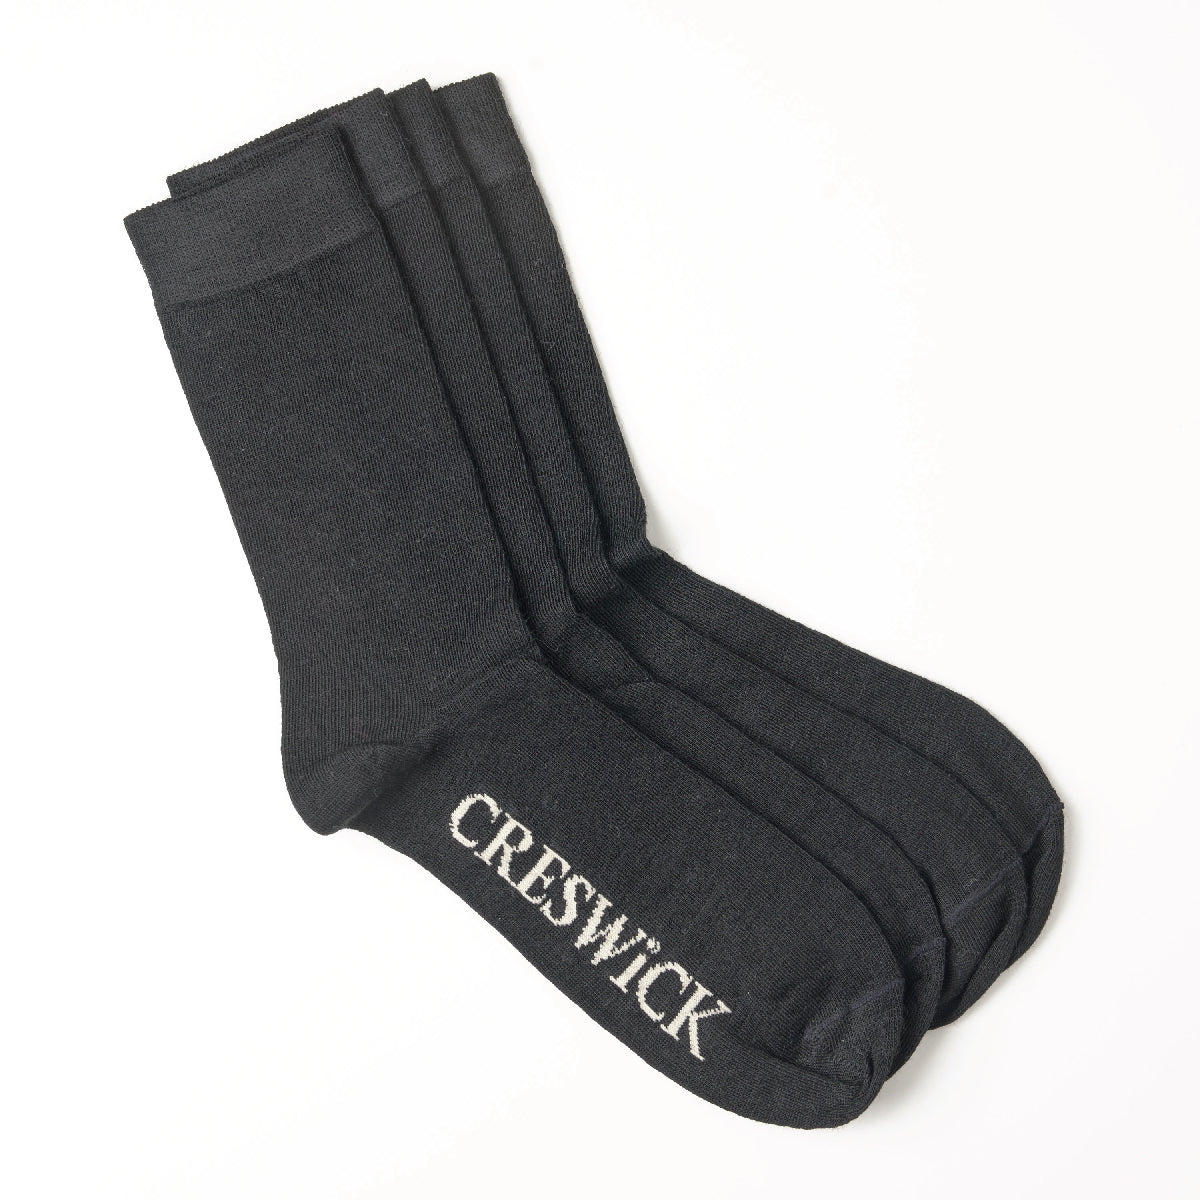 Merino Socks - 2 Pack